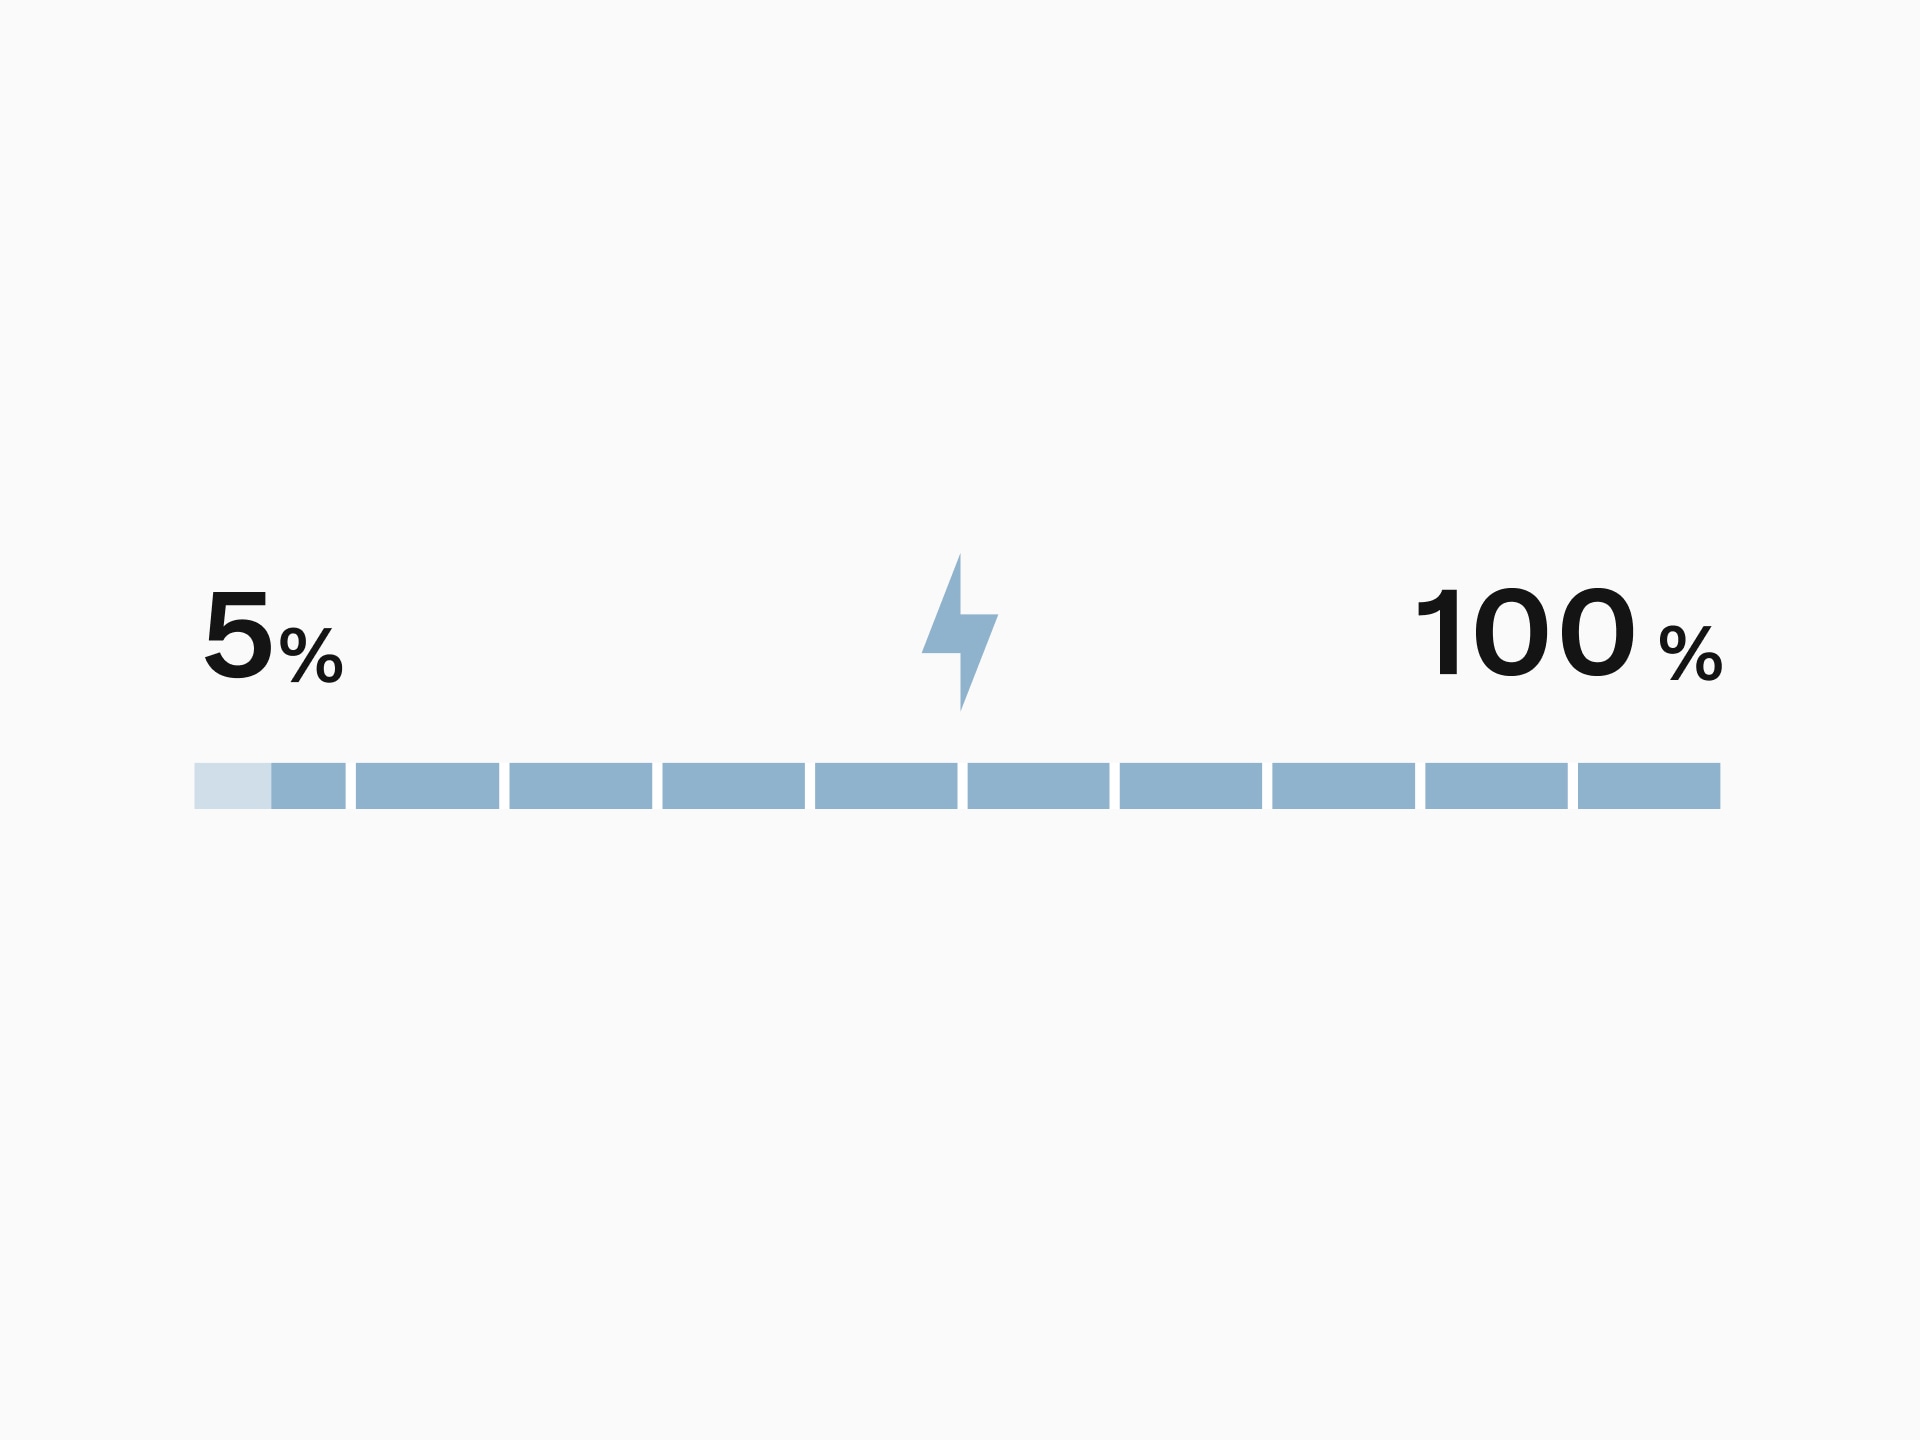 Gráfico de barras del porcentaje de recarga de la batería, resaltado del 5% al 100% para indicar el rango de funcionamiento ideal para una batería híbrida recargable.